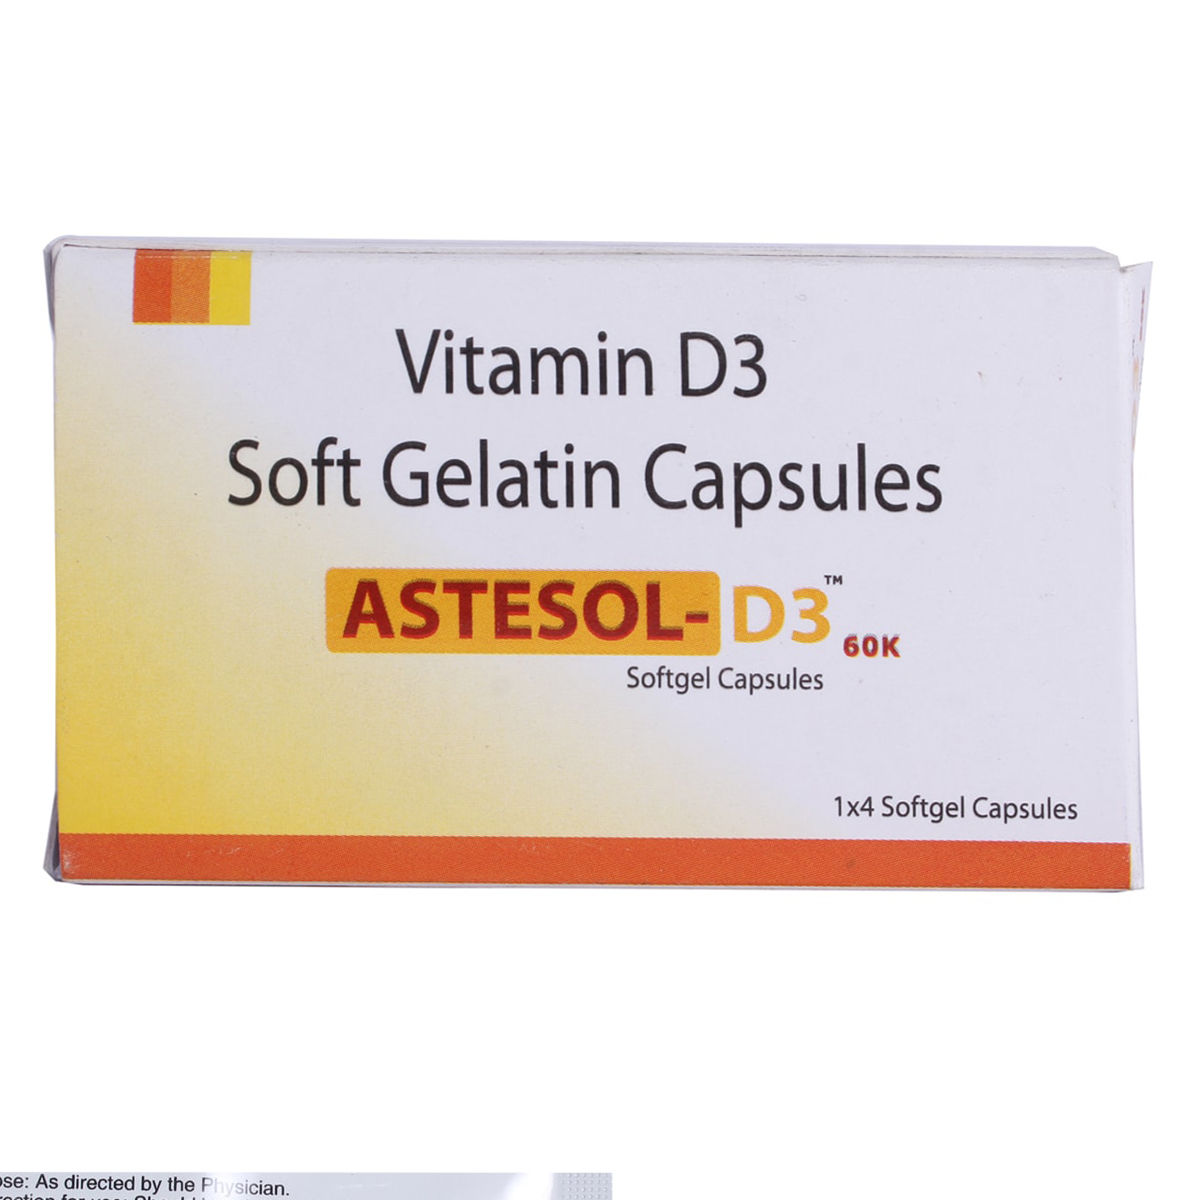 Buy Astesol-D3 60K Capsule 4's Online